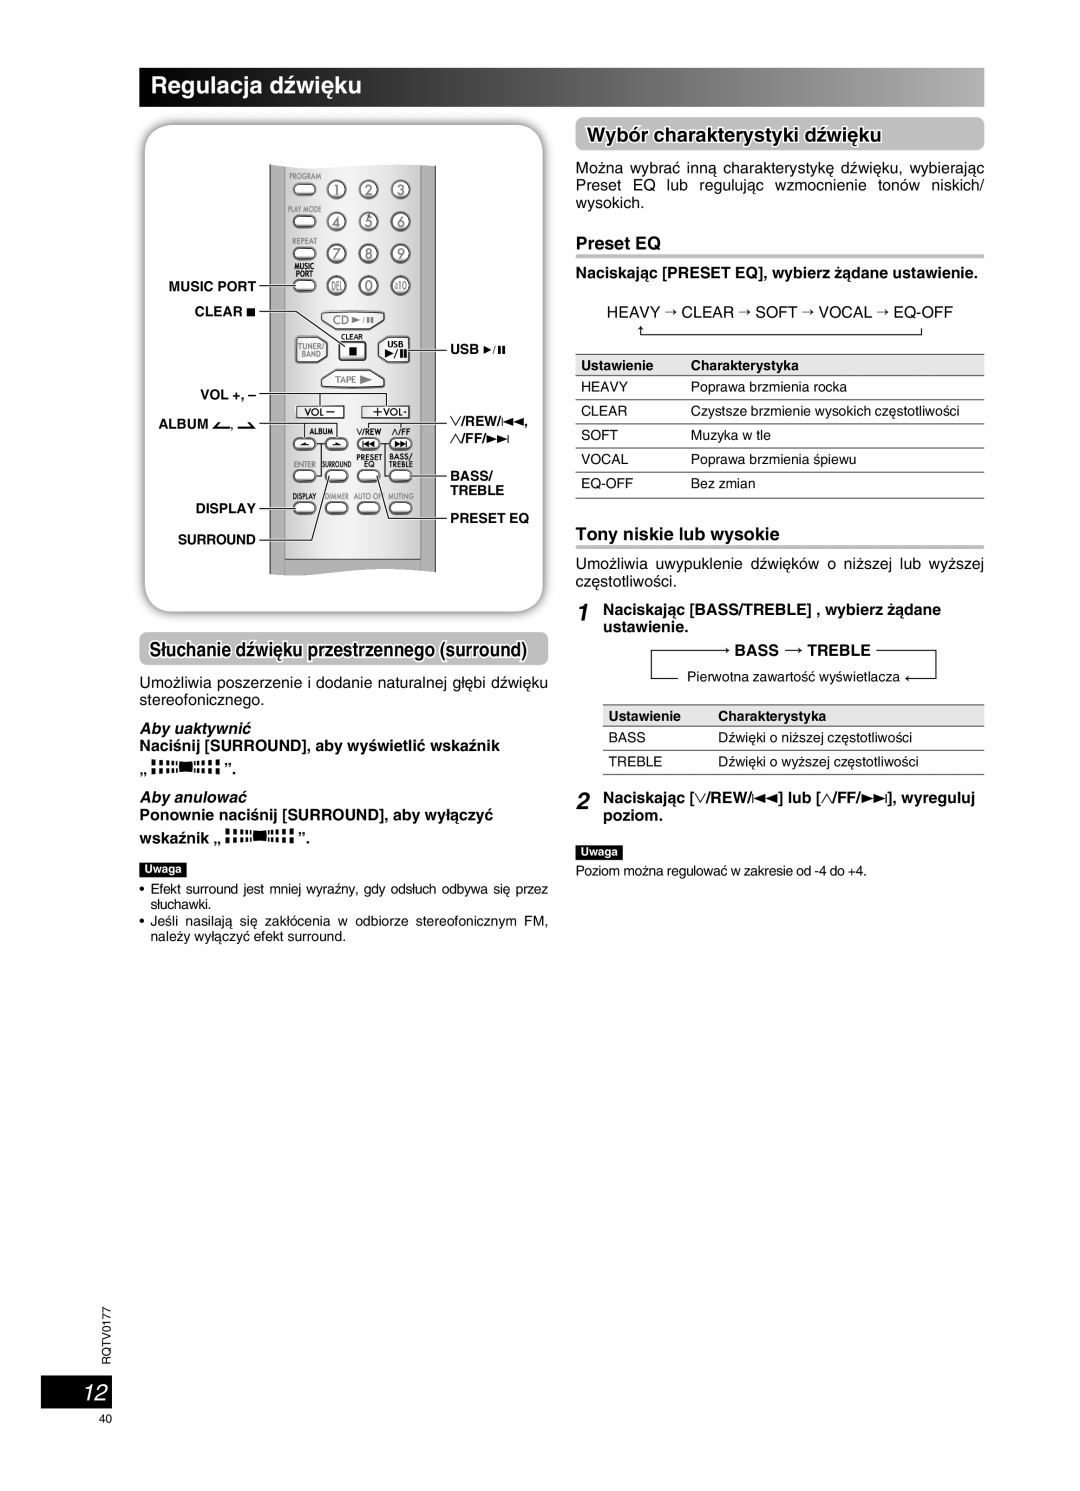 Panasonic SC-PM45 manual Regulacja dêwi´ku, Wybór charakterystyki dêwi´ku, Aby uaktywniç, Aby anulowaç 